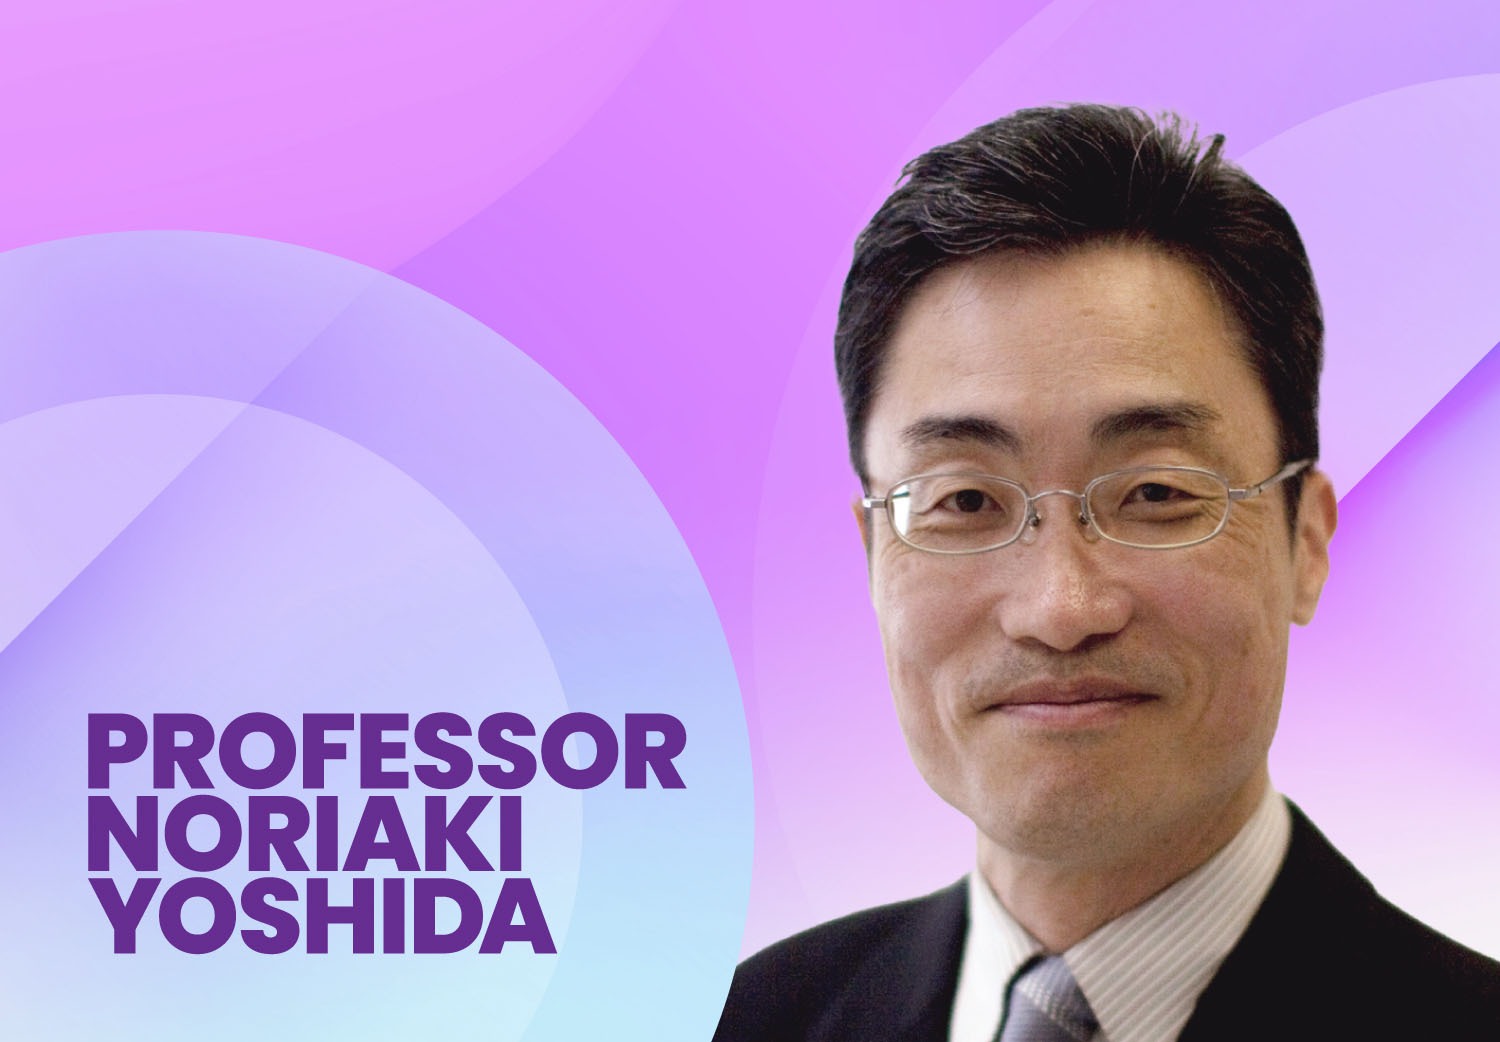 Professor Noriaki Yoshida